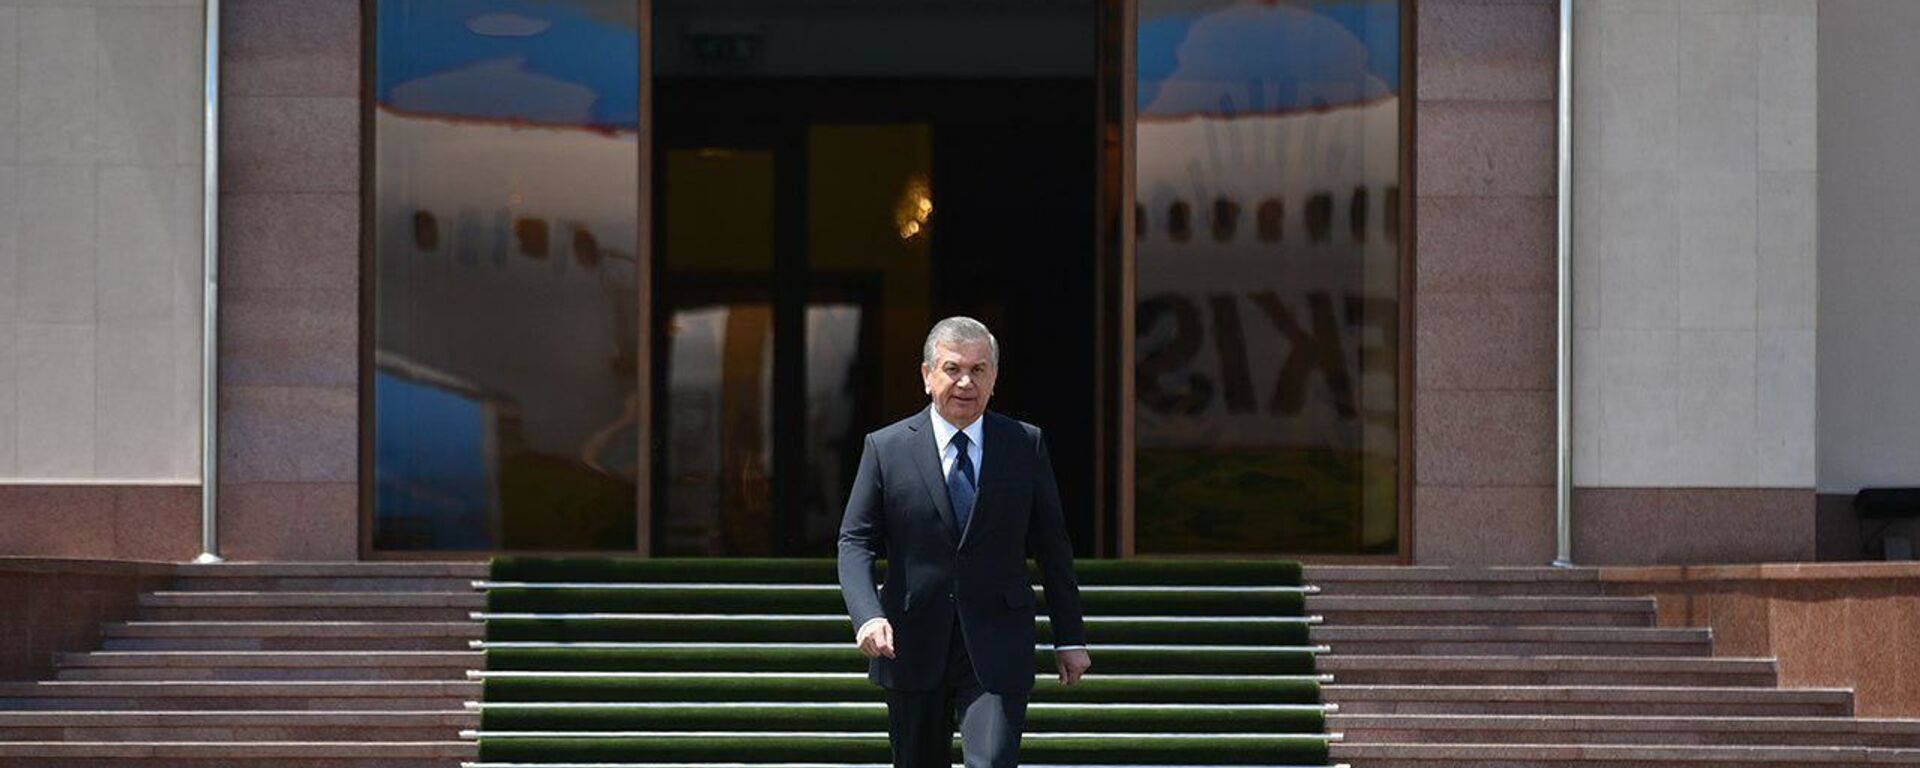 Президент Узбекистана Шавкат Мирзиёев отбыл в Москву с рабочим визитом - Sputnik Ўзбекистон, 1920, 31.05.2021